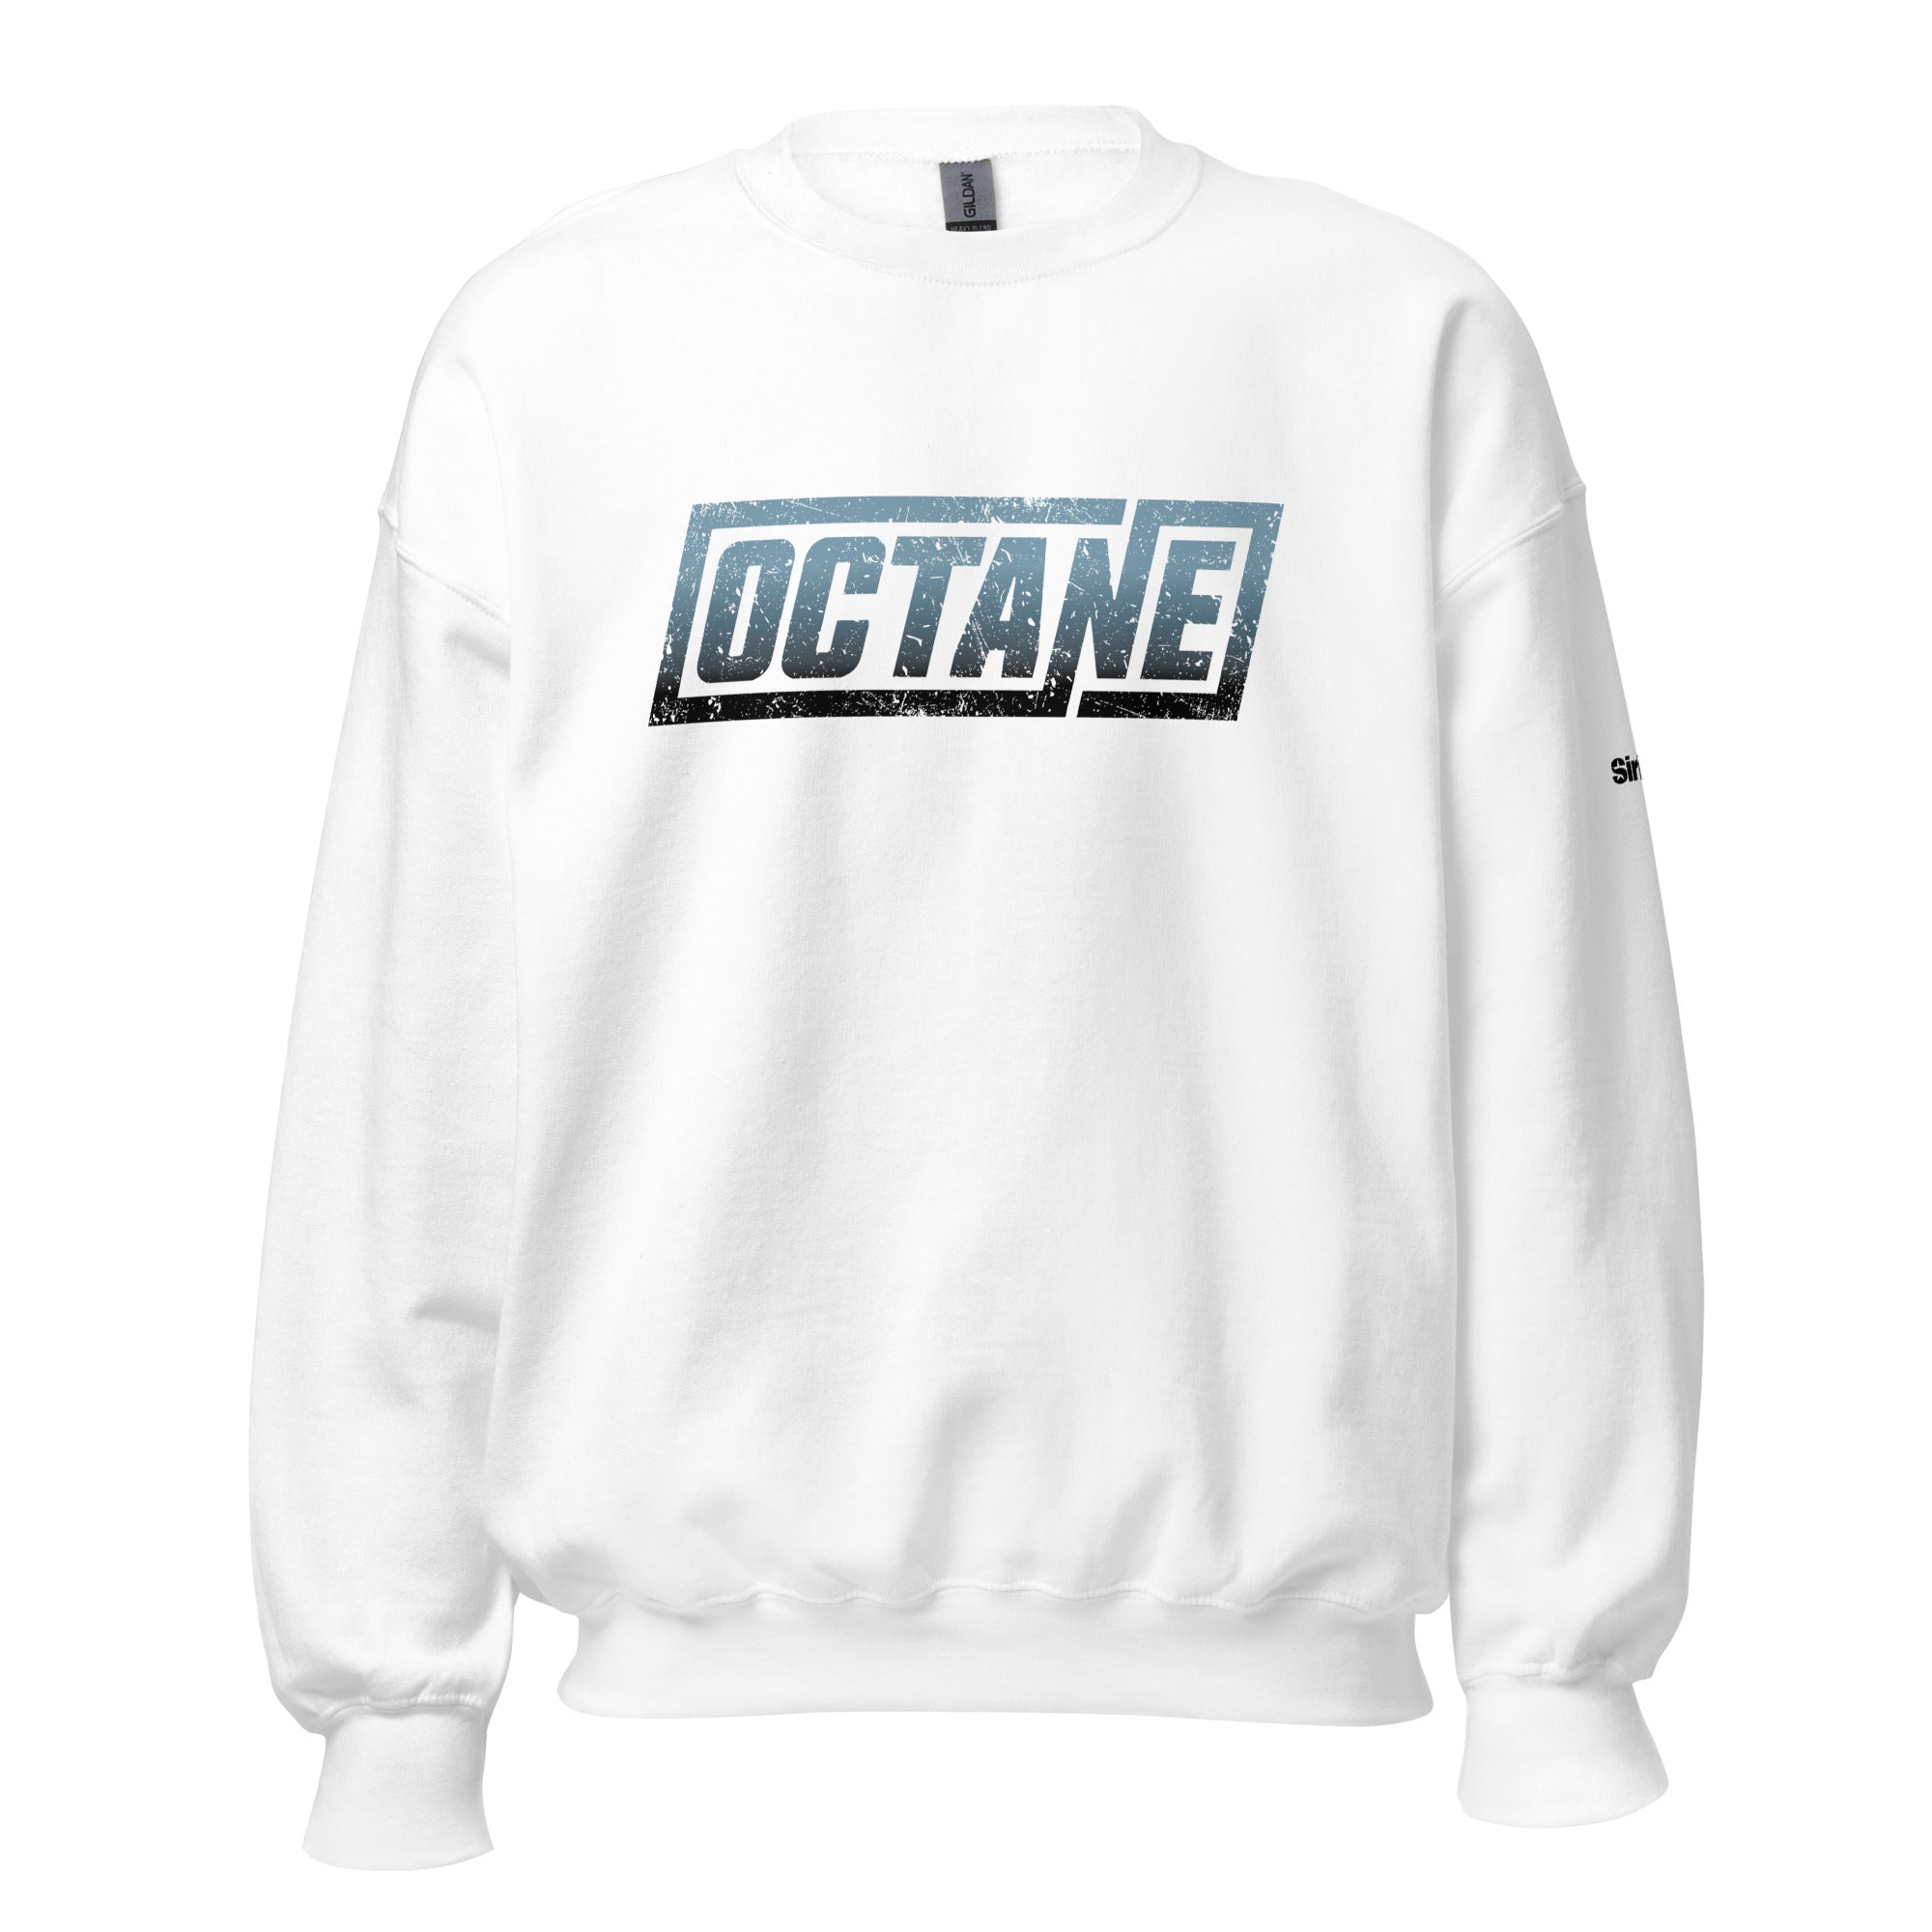 Octane: Sweatshirt (White)